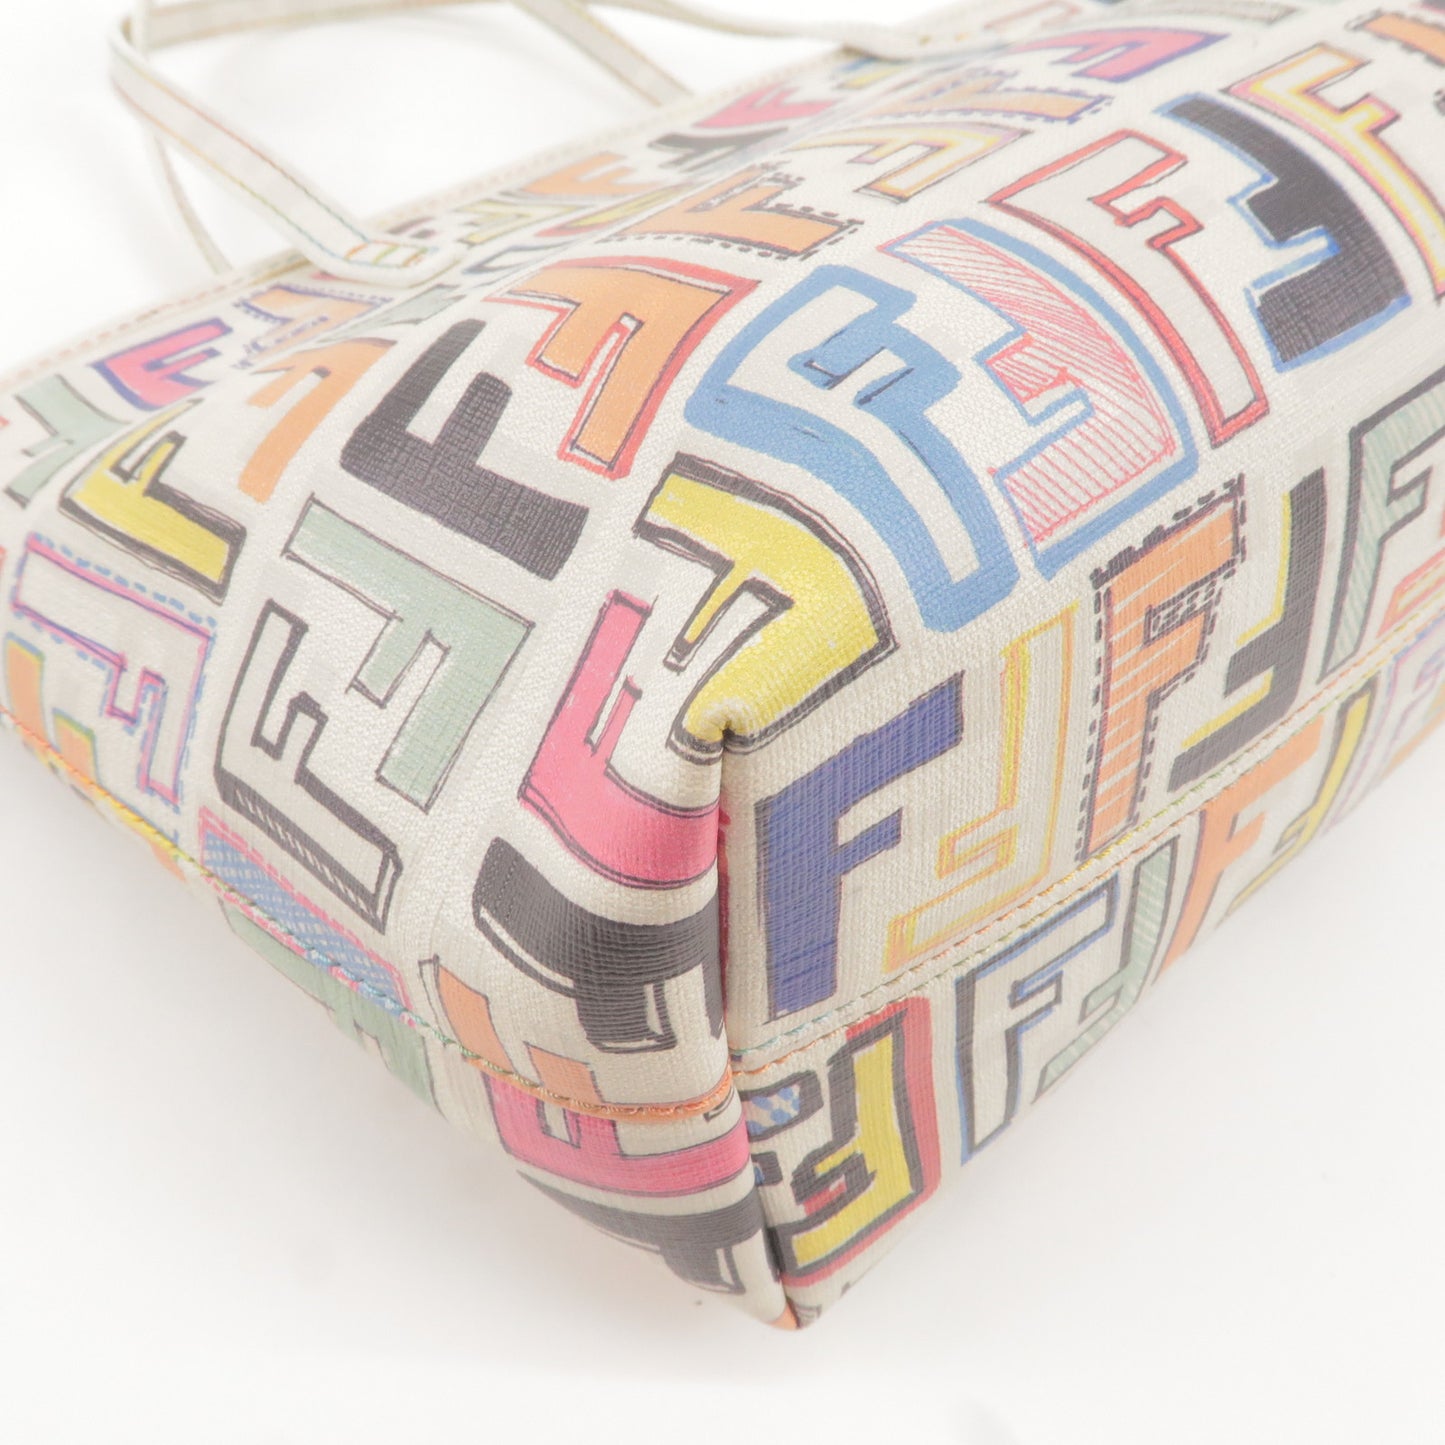 FENDI Zucca Logo Print PVC Tote Bag Multi Color White 8BH223